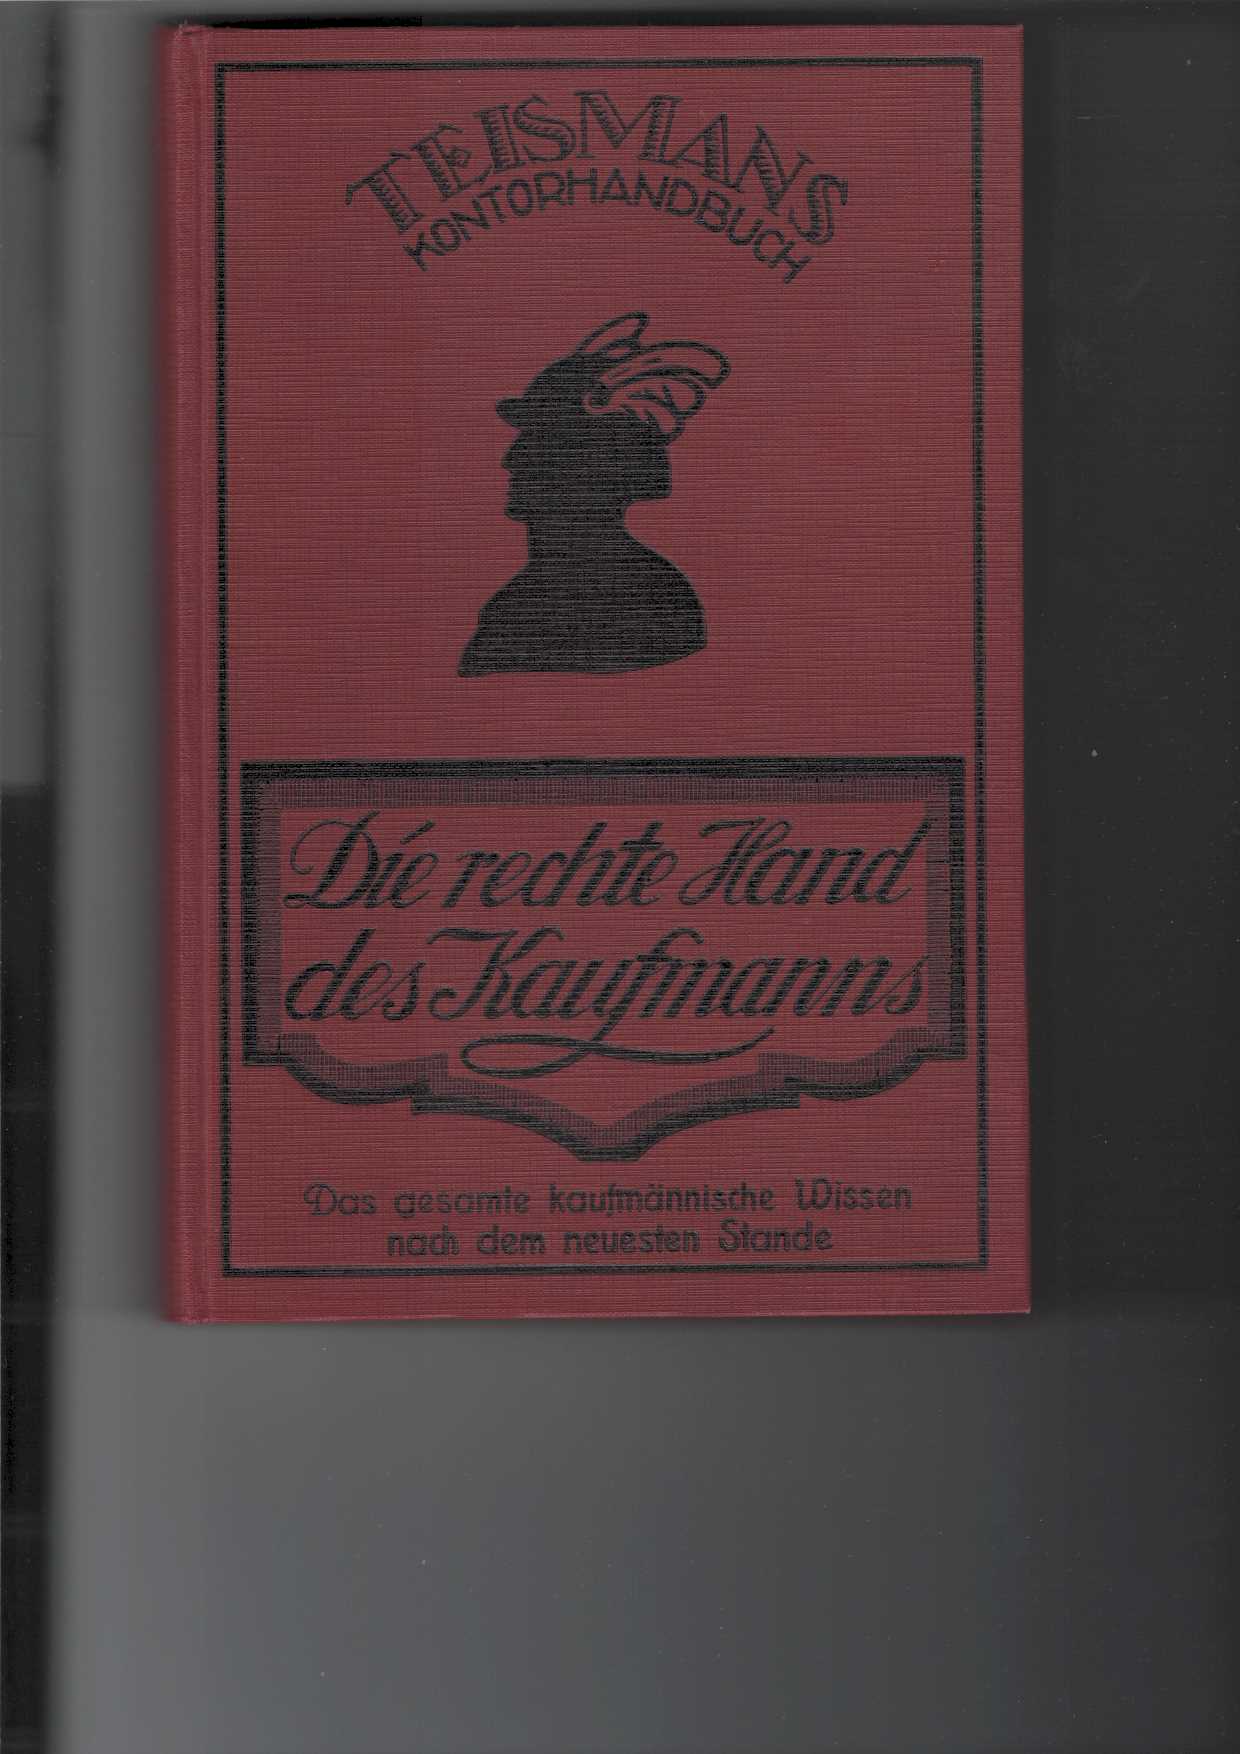   Die rechte Hand des Kaufmanns : Teismans Kontorhandbuch. 